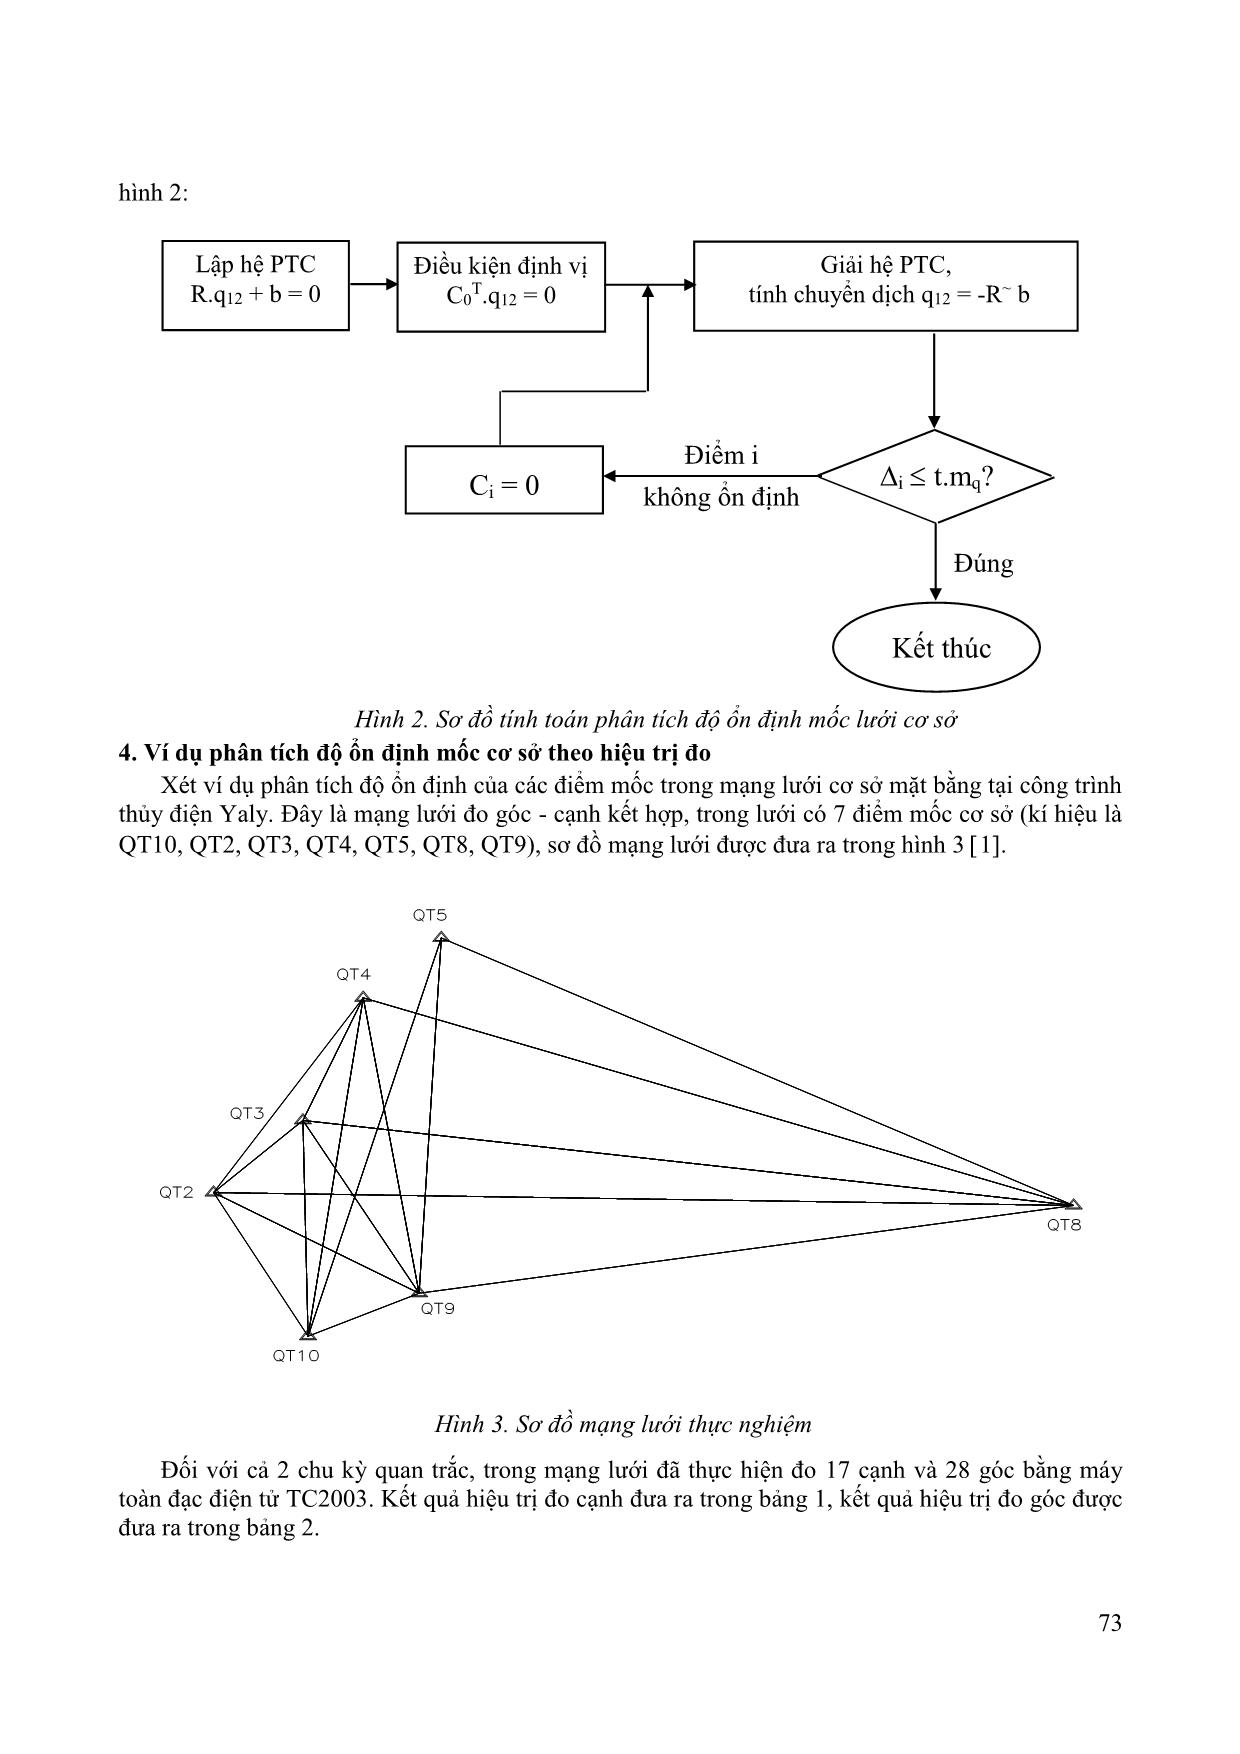 Phân tích độ ổn định lưới cơ sở quan trắc chuyển dịch ngang công trình theo thuật toán bình sai hiệu trị đo trang 3